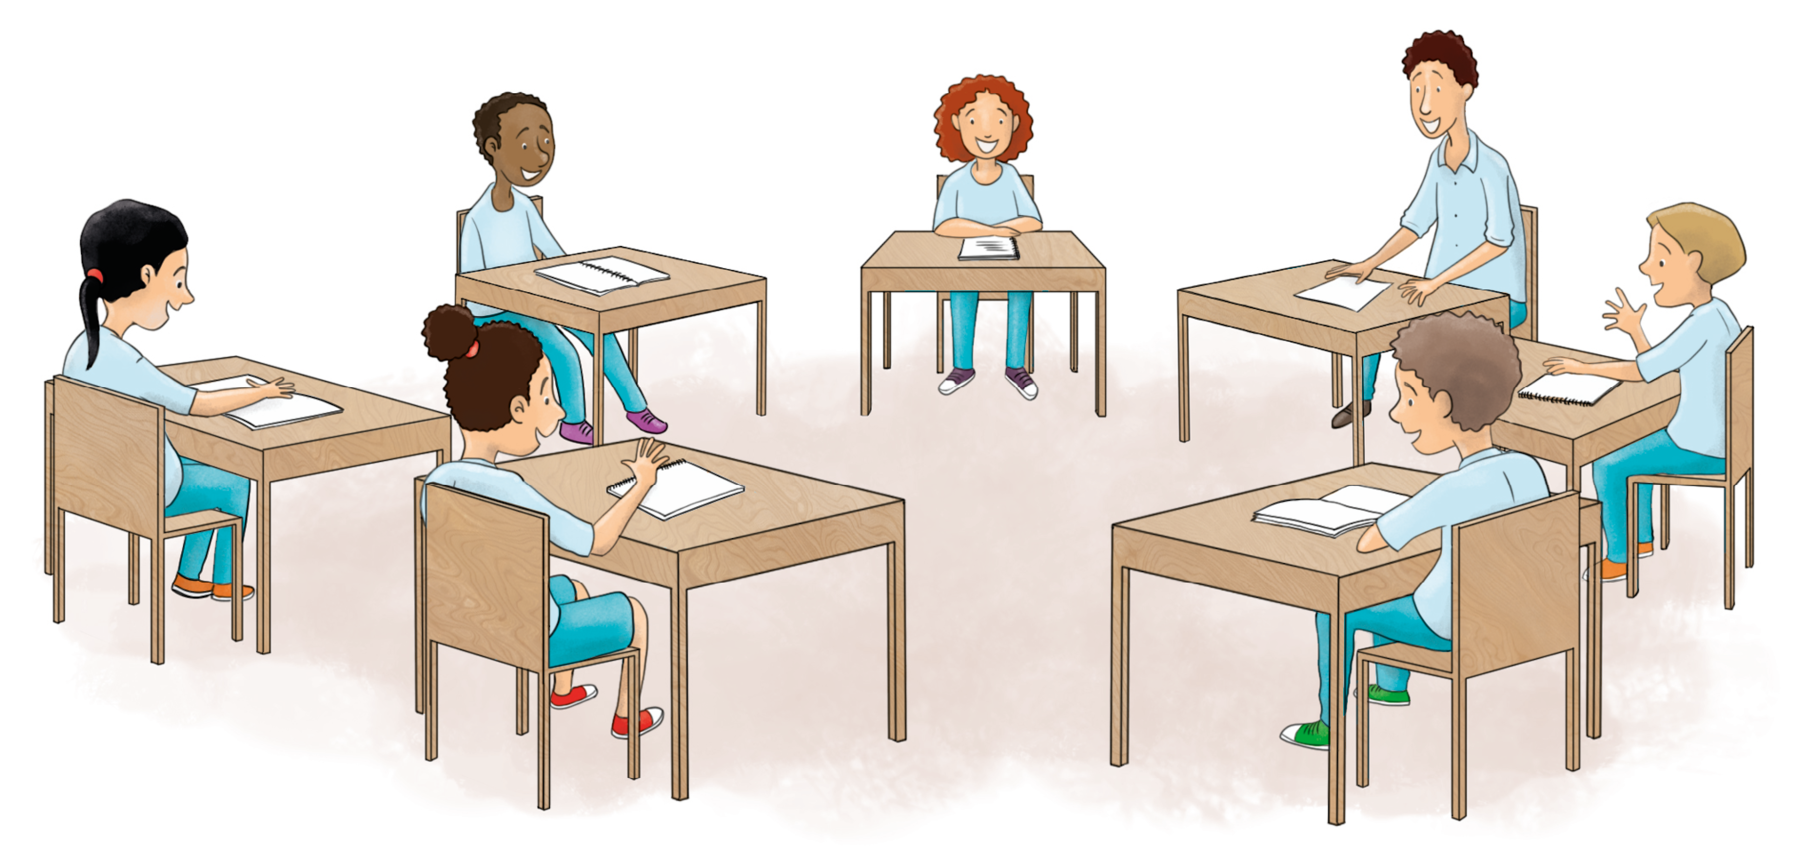 Ilustração. Um homem adulto e um grupo de crianças estão sentados em carteiras dispostas formando um círculo. Todos estão sorrindo e possuem caderno ou folhas sobre a mesa. Todos vestem uniforme em tons de azul.